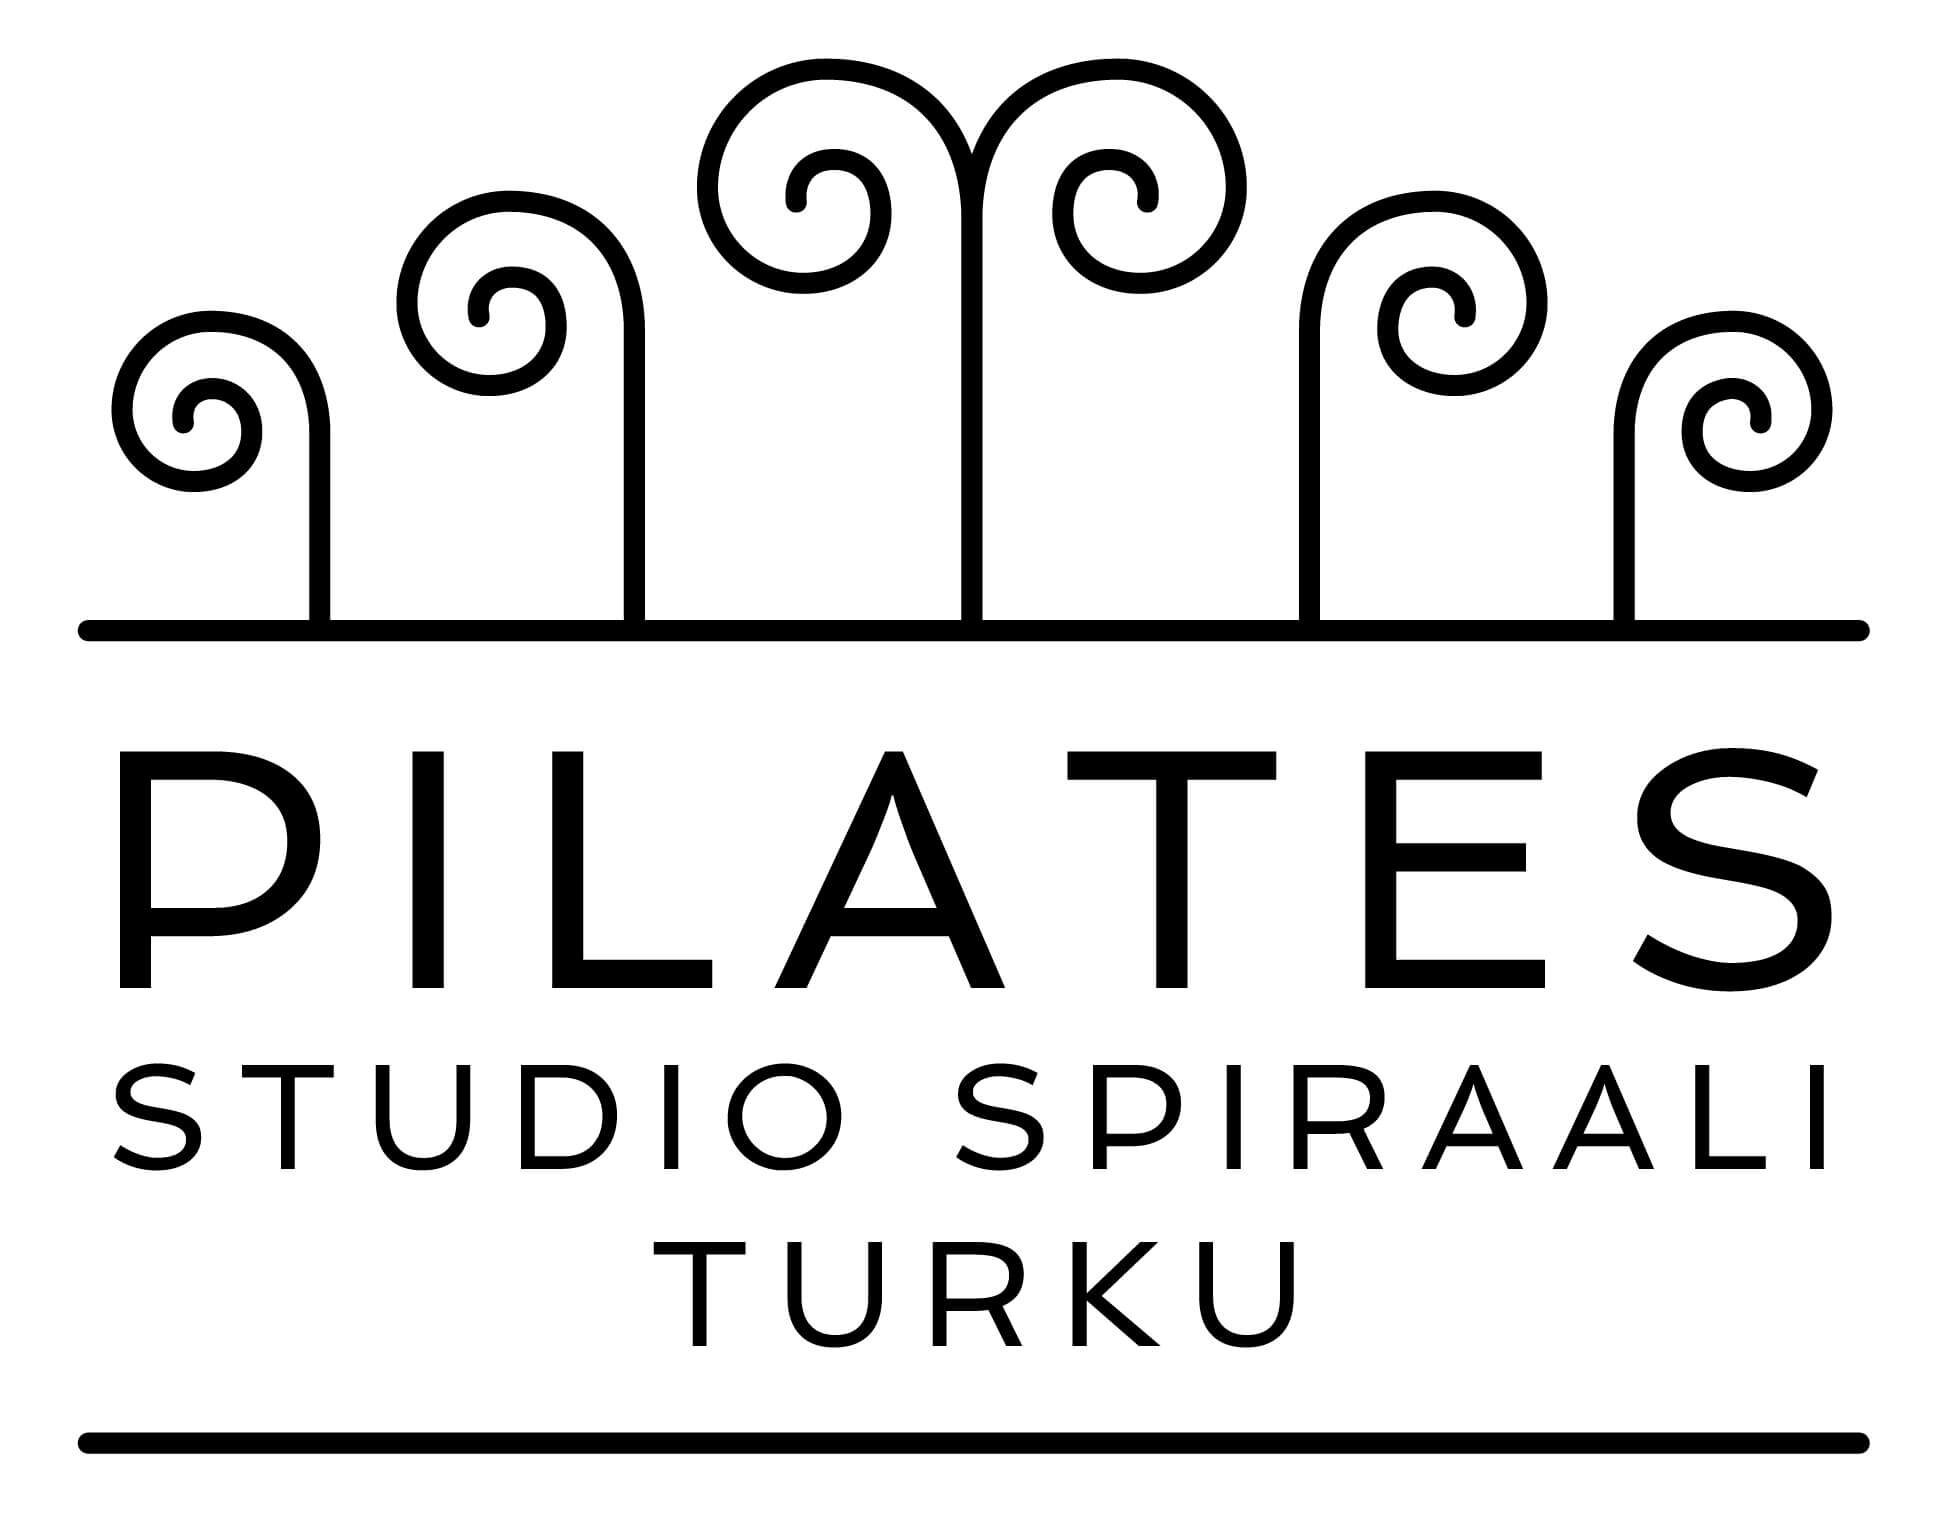 Asiakkaiden kokemuksia studion tunneista – Pilates Studio Spiraali Turku